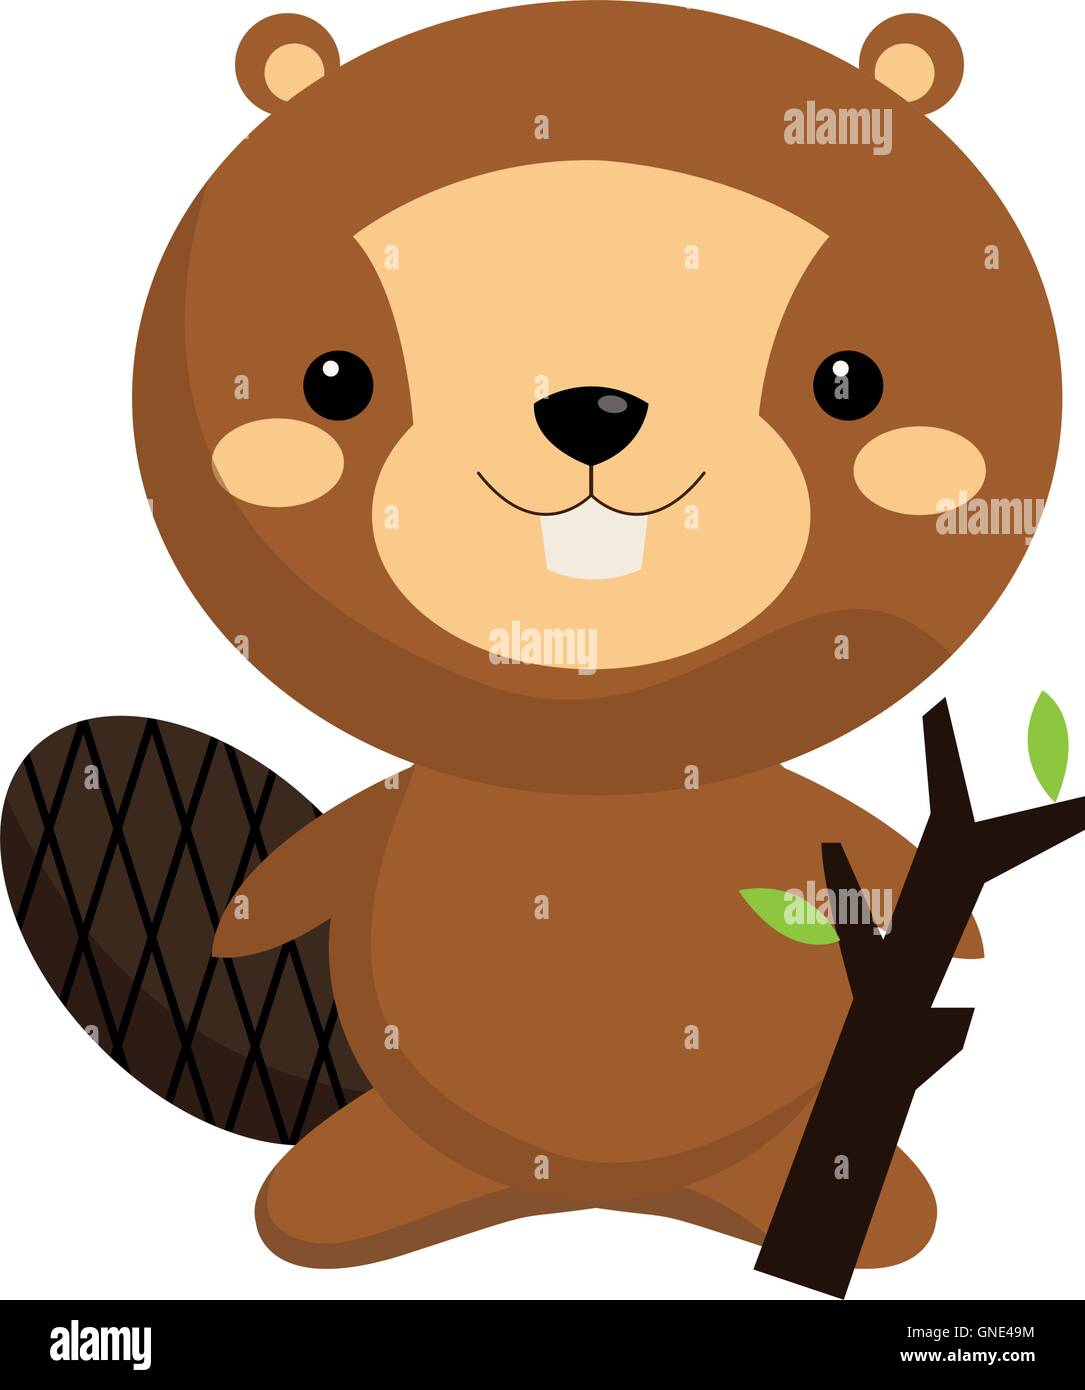 cute beaver cartoon icon Stock Vector